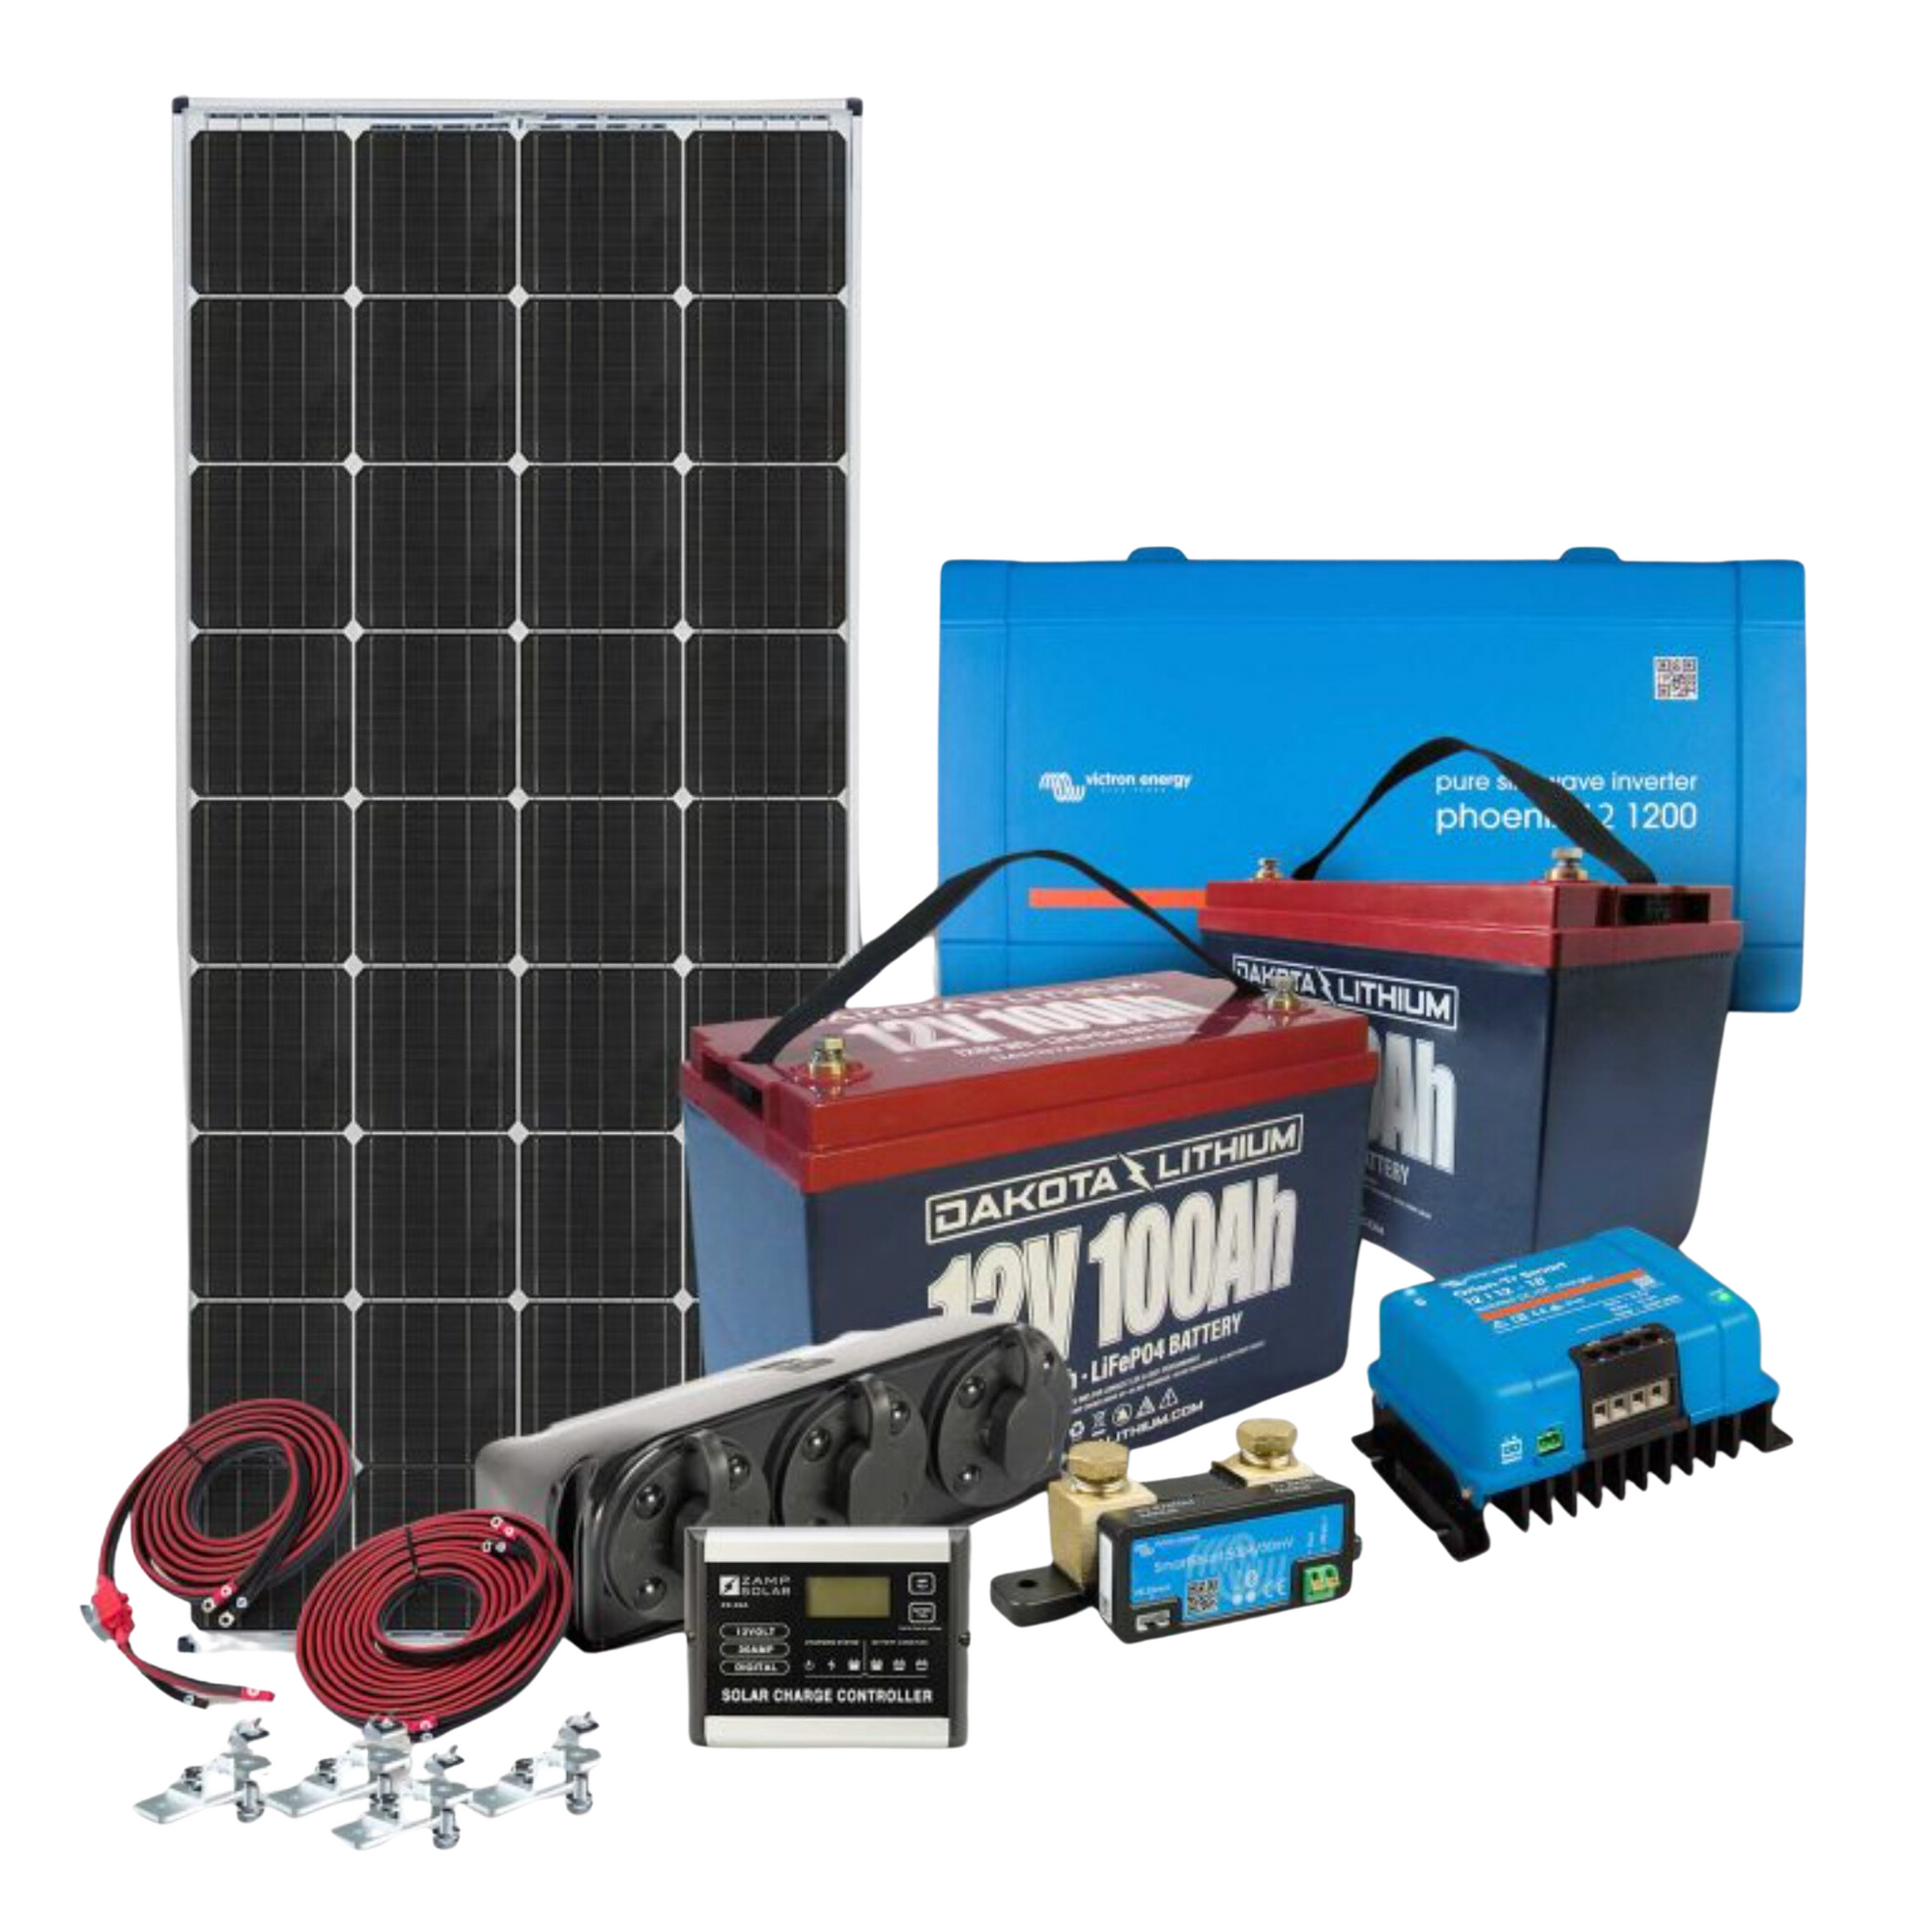 Dakota Lithium & Zamp Solar | 12V 200Ah Off-Grid Power System